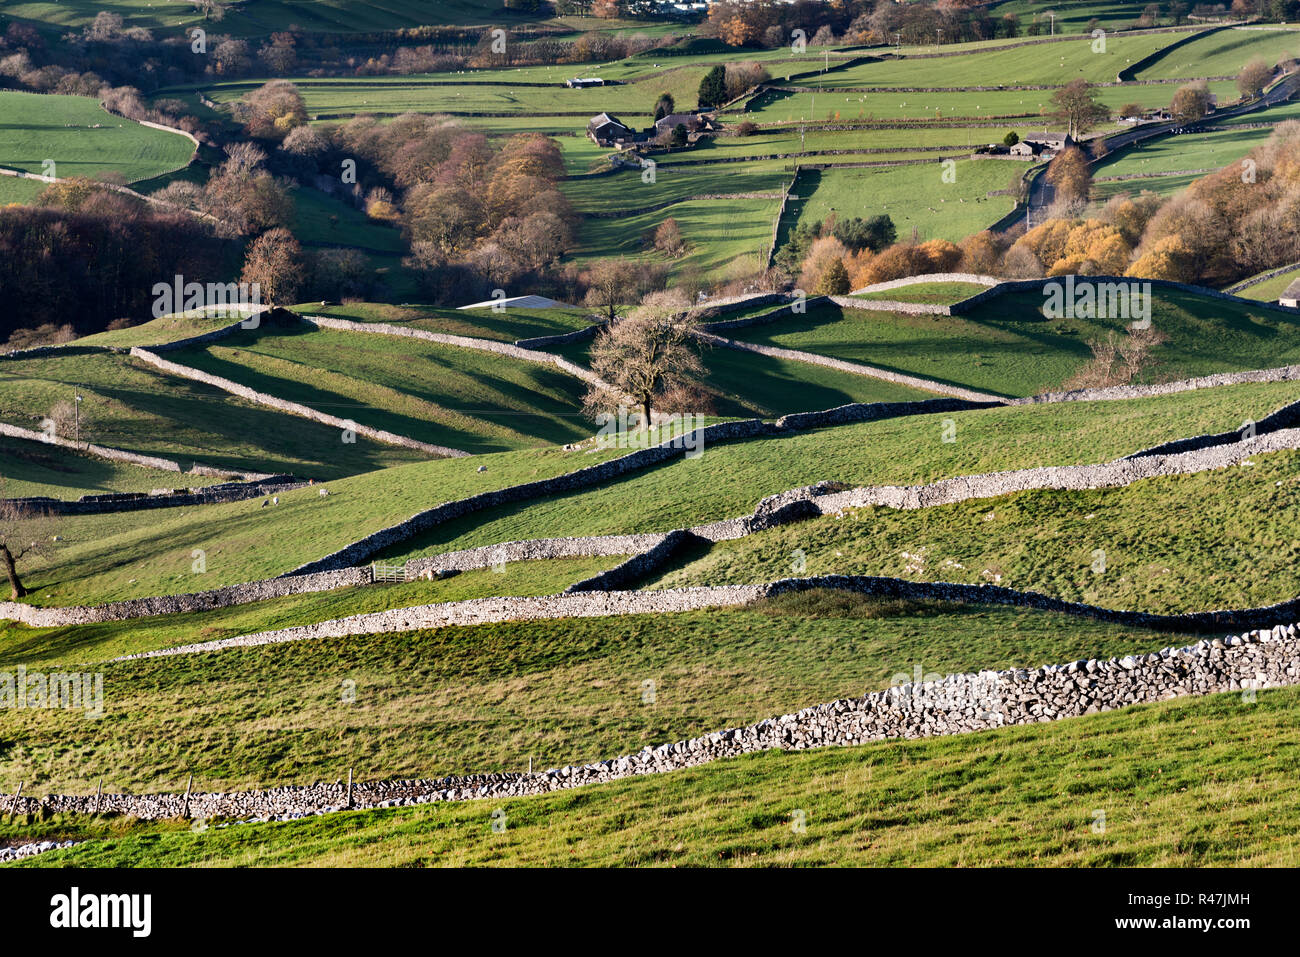 Un modello di campi racchiusi dalle tradizionali muri in pietra a secco, Langcliffe, vicino a Settle, Yorkshire Dales National Park, Regno Unito Foto Stock